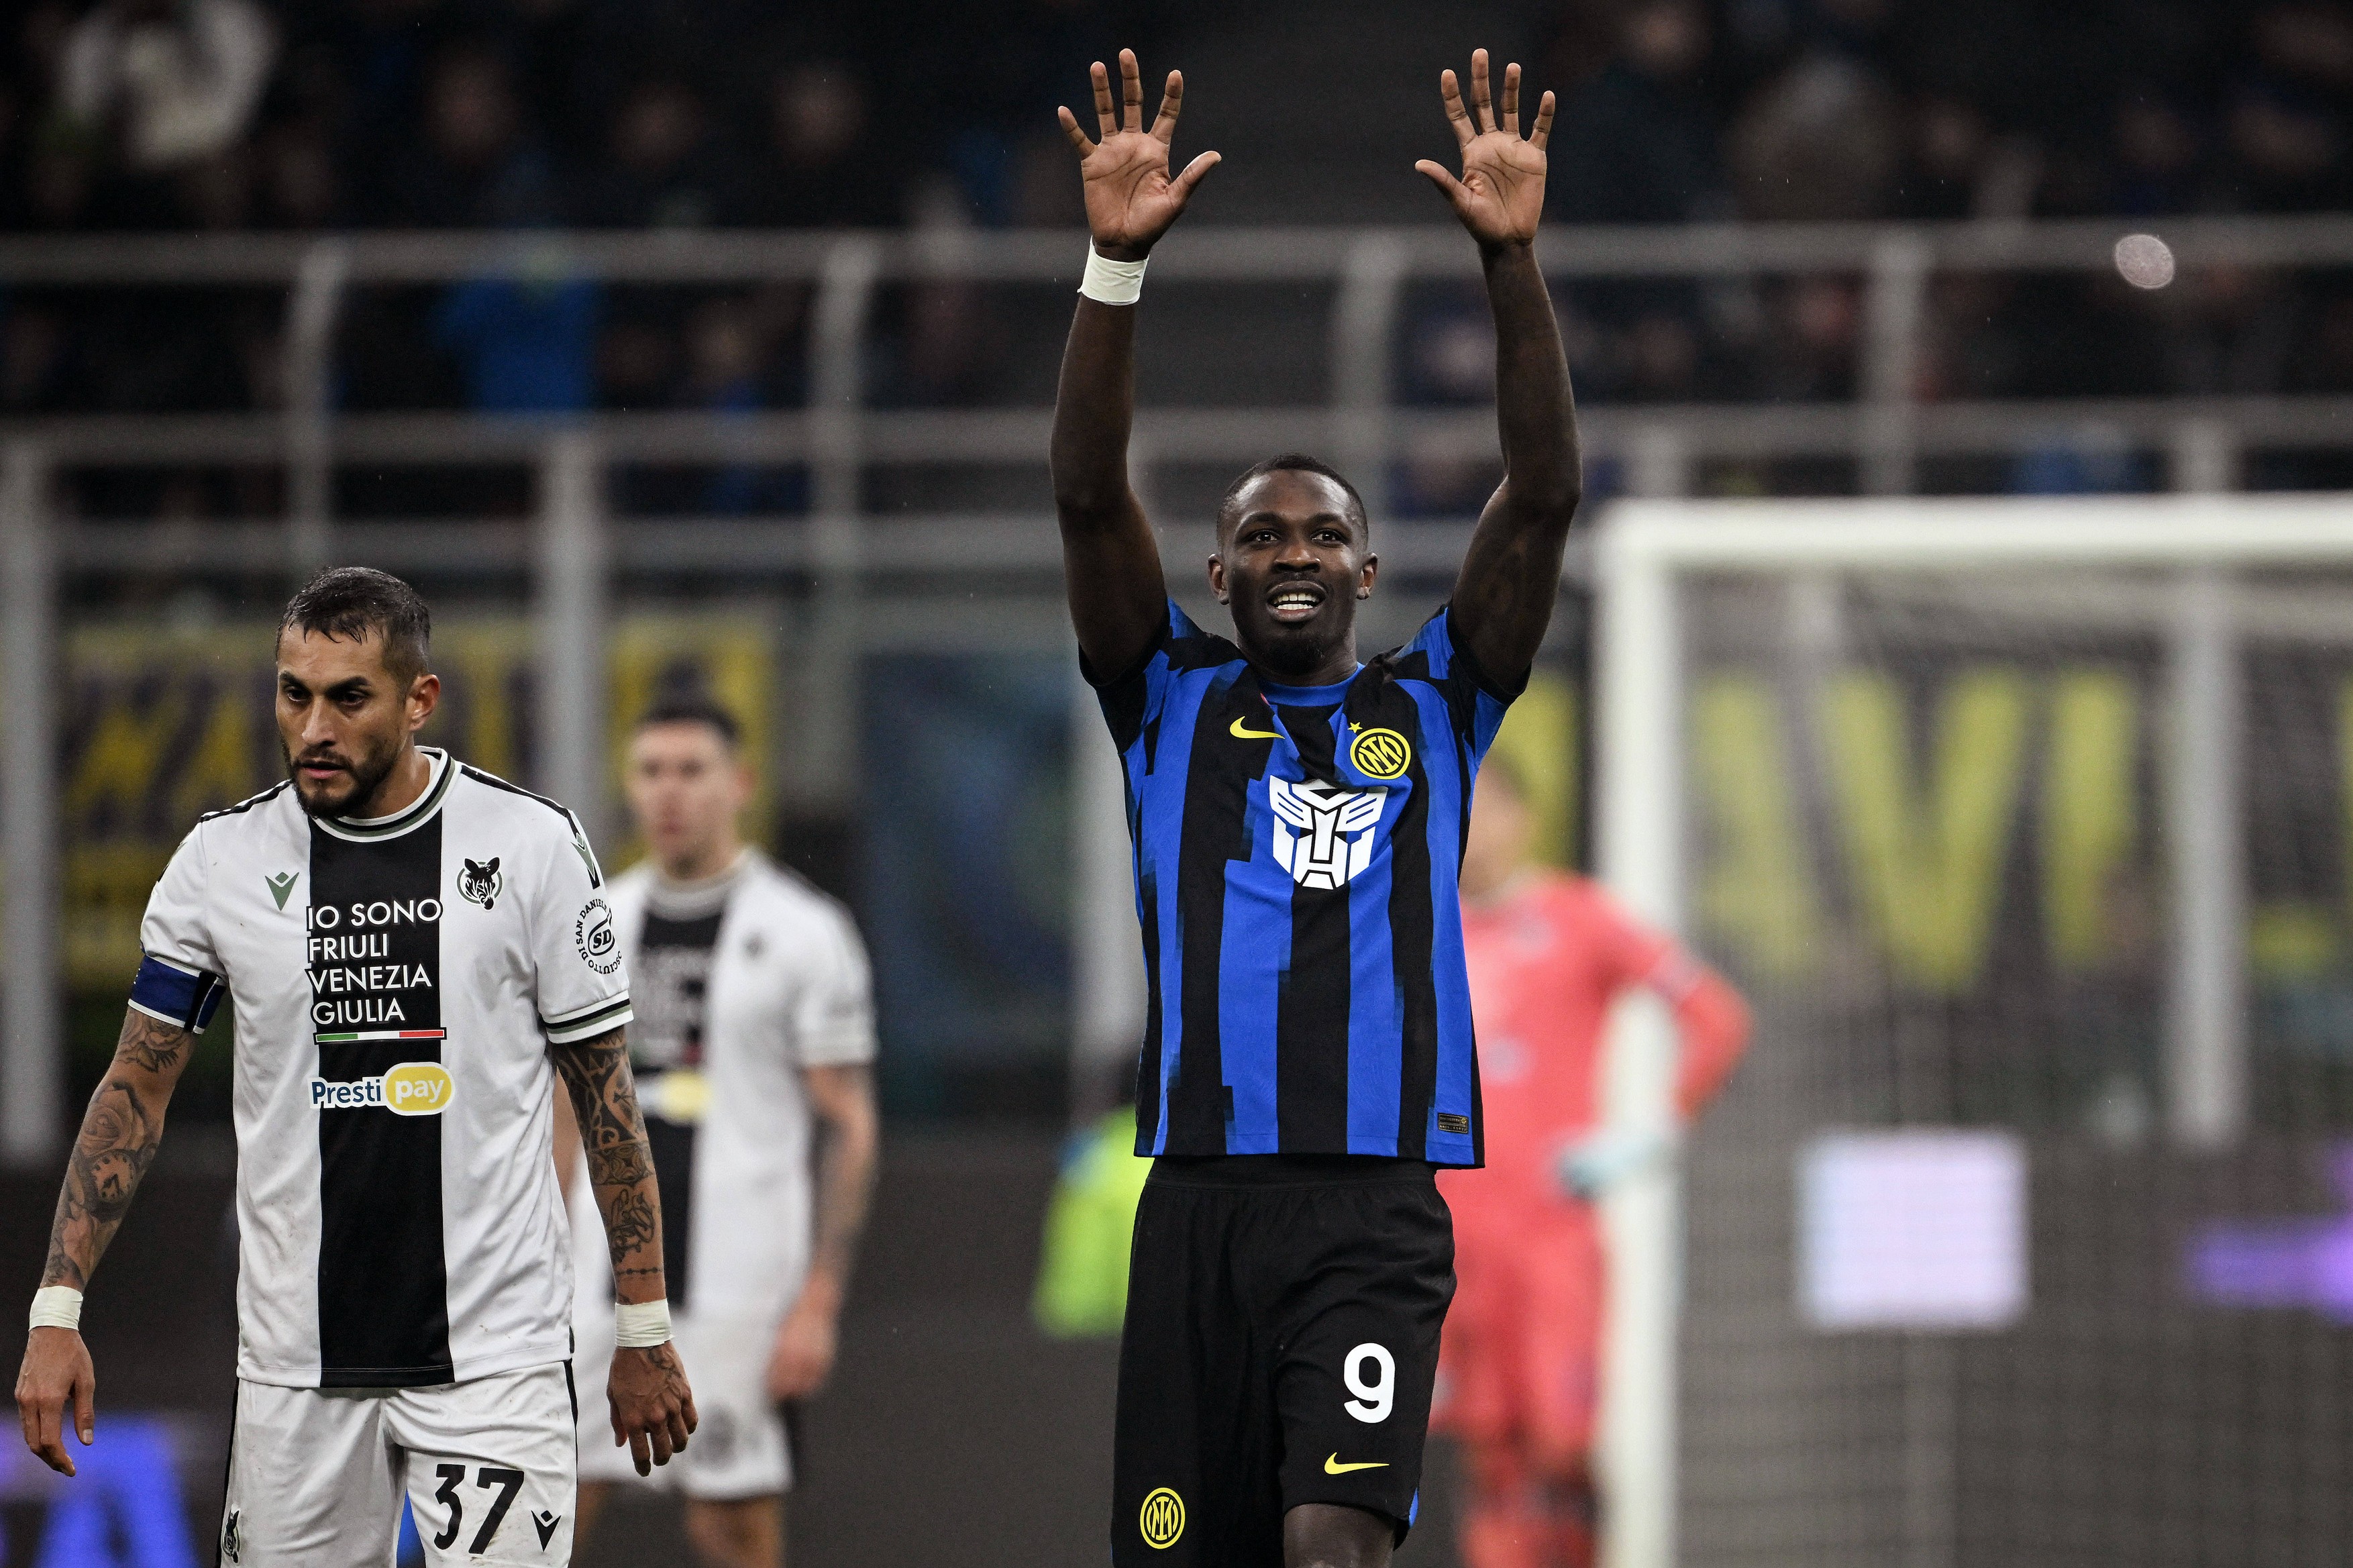 Udinese - Inter Milano 1-0, ACUM pe DGS 2. Samardzic a înscris în minutul 40